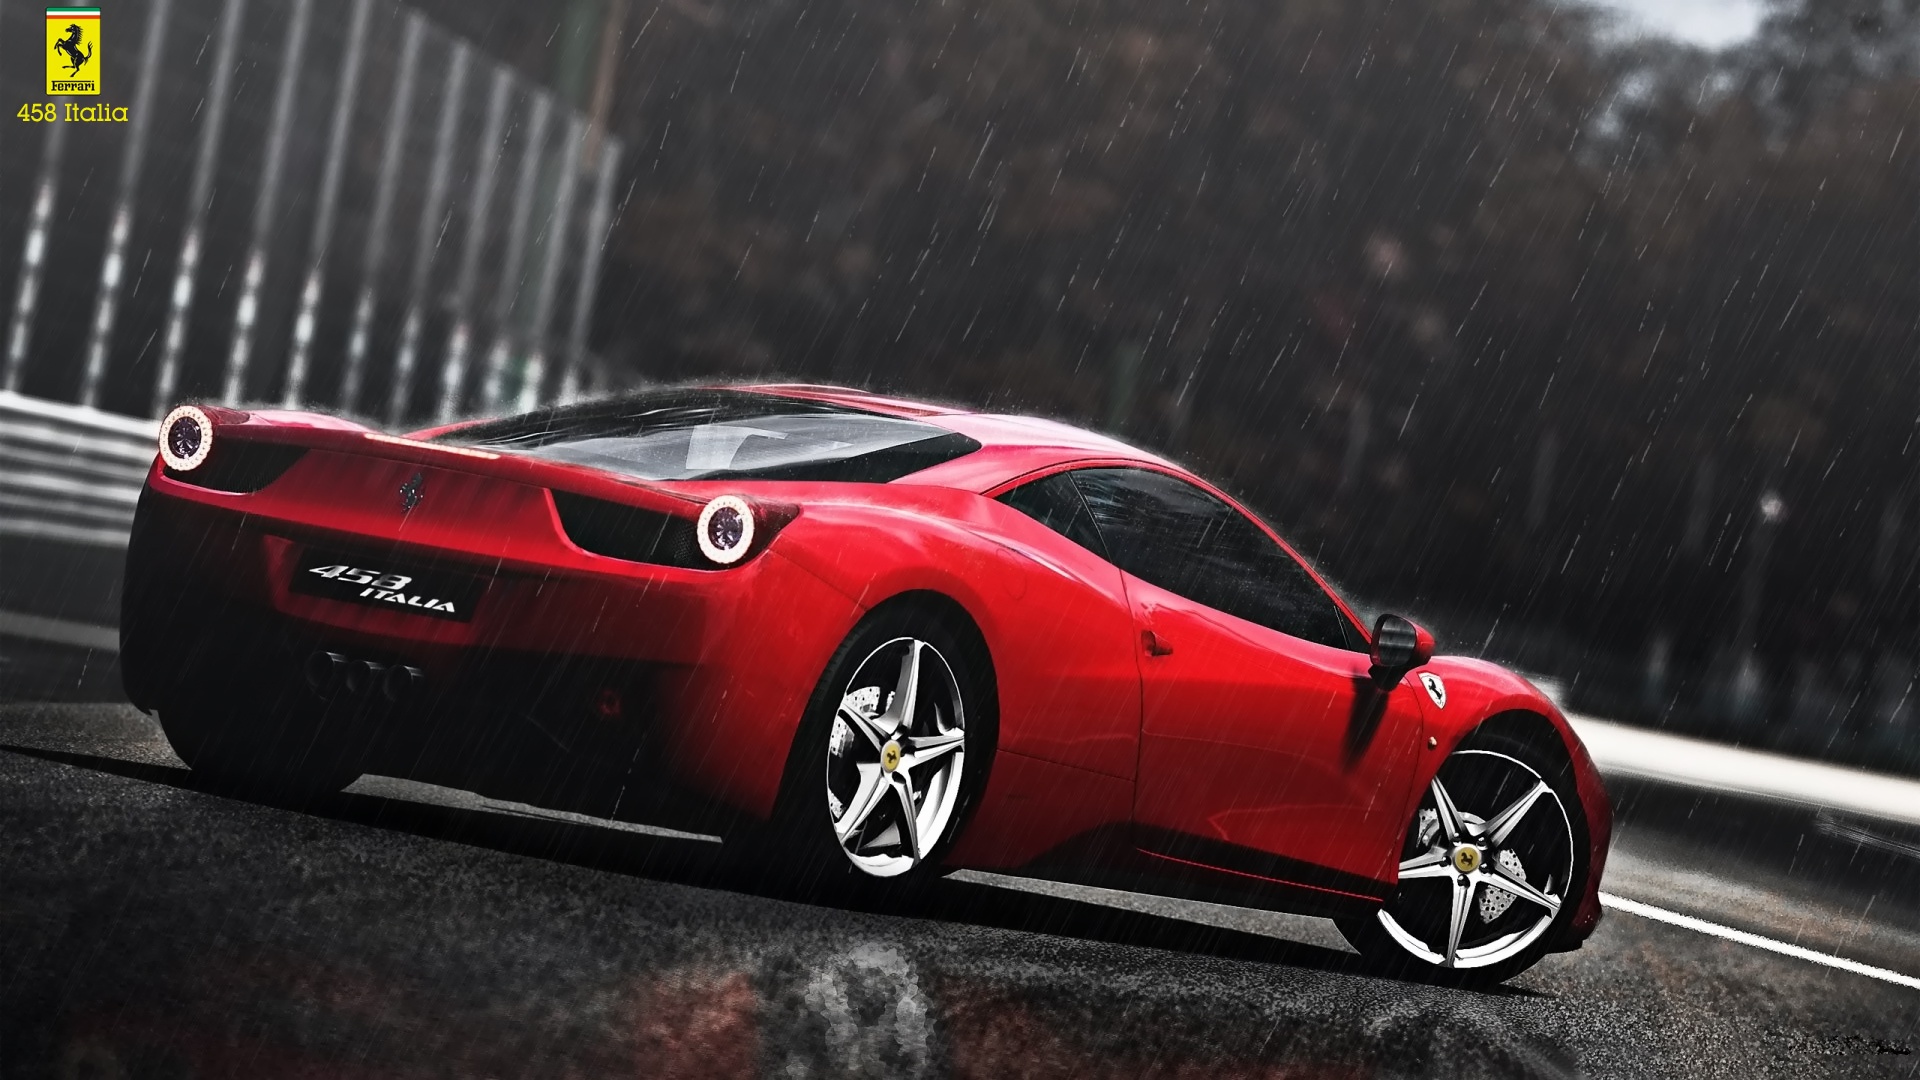 High Definition Wallpaper Of Ferrari Italia Picture